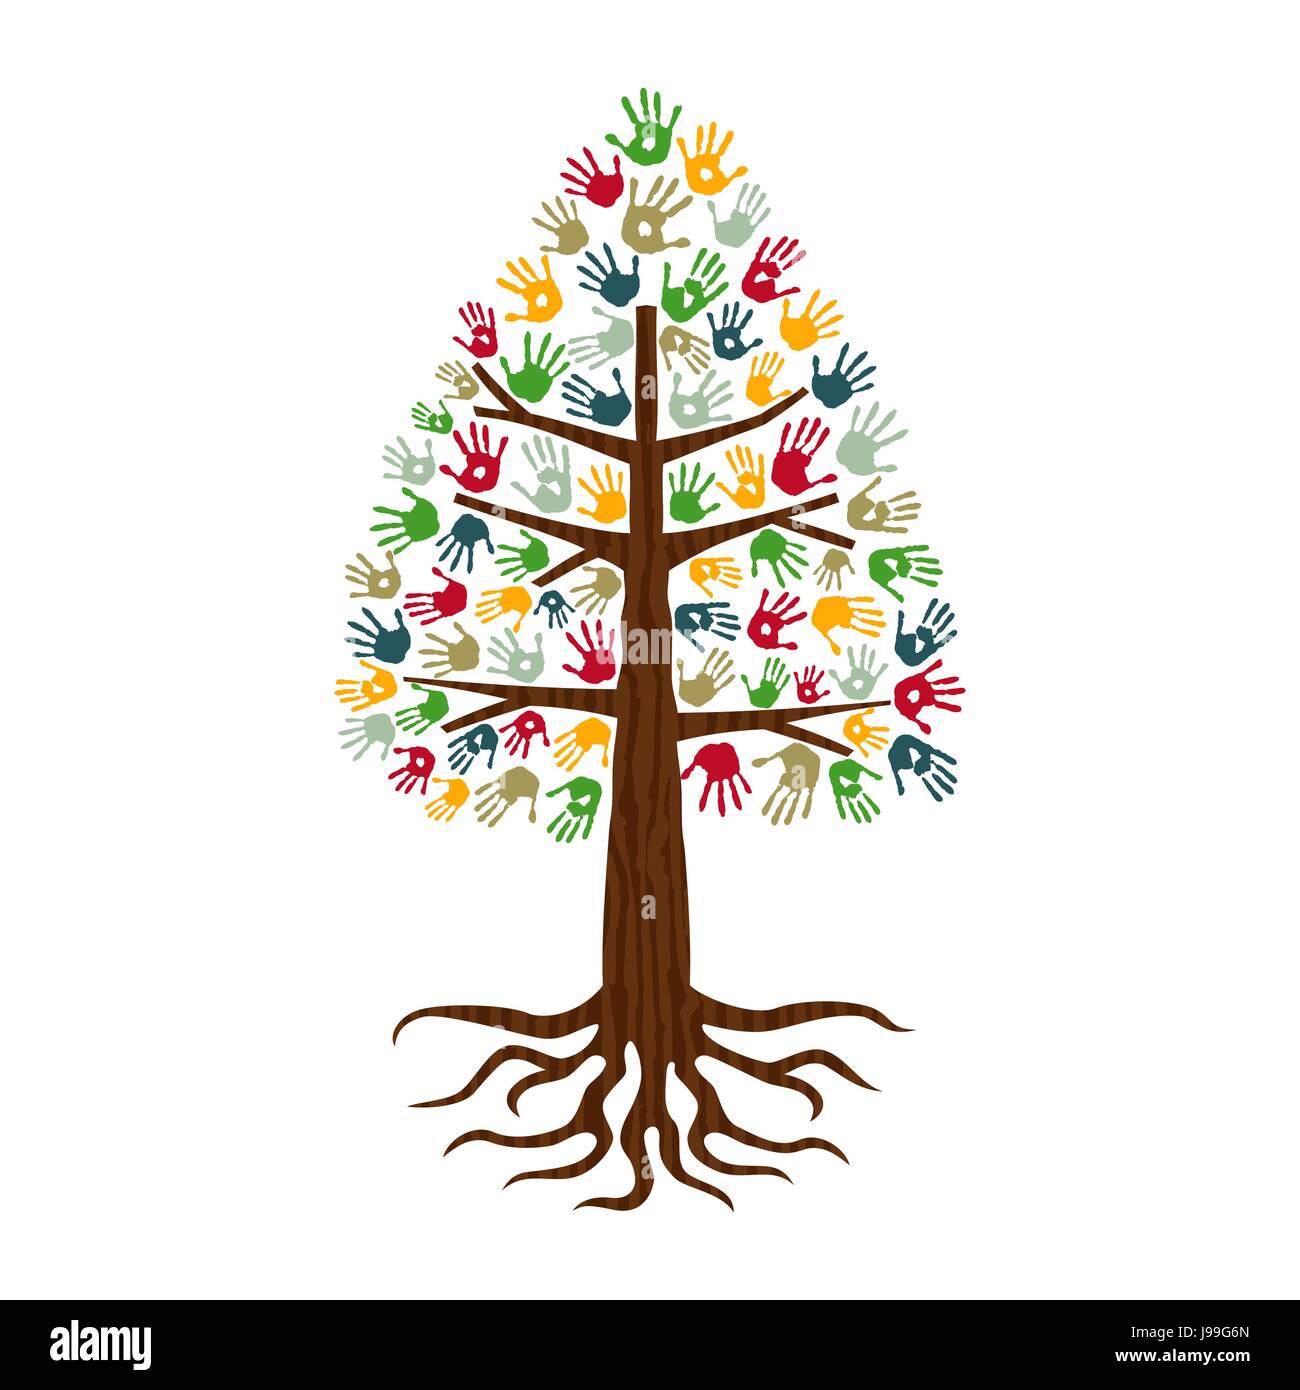 Kiefer Baum Händen der bunte vielfältige Gemeinschaft. Isolierte Konzept Illustration für soziale Hilfe, Nächstenliebe oder Gruppenarbeit. EPS10 Vektor. Stock Vektor